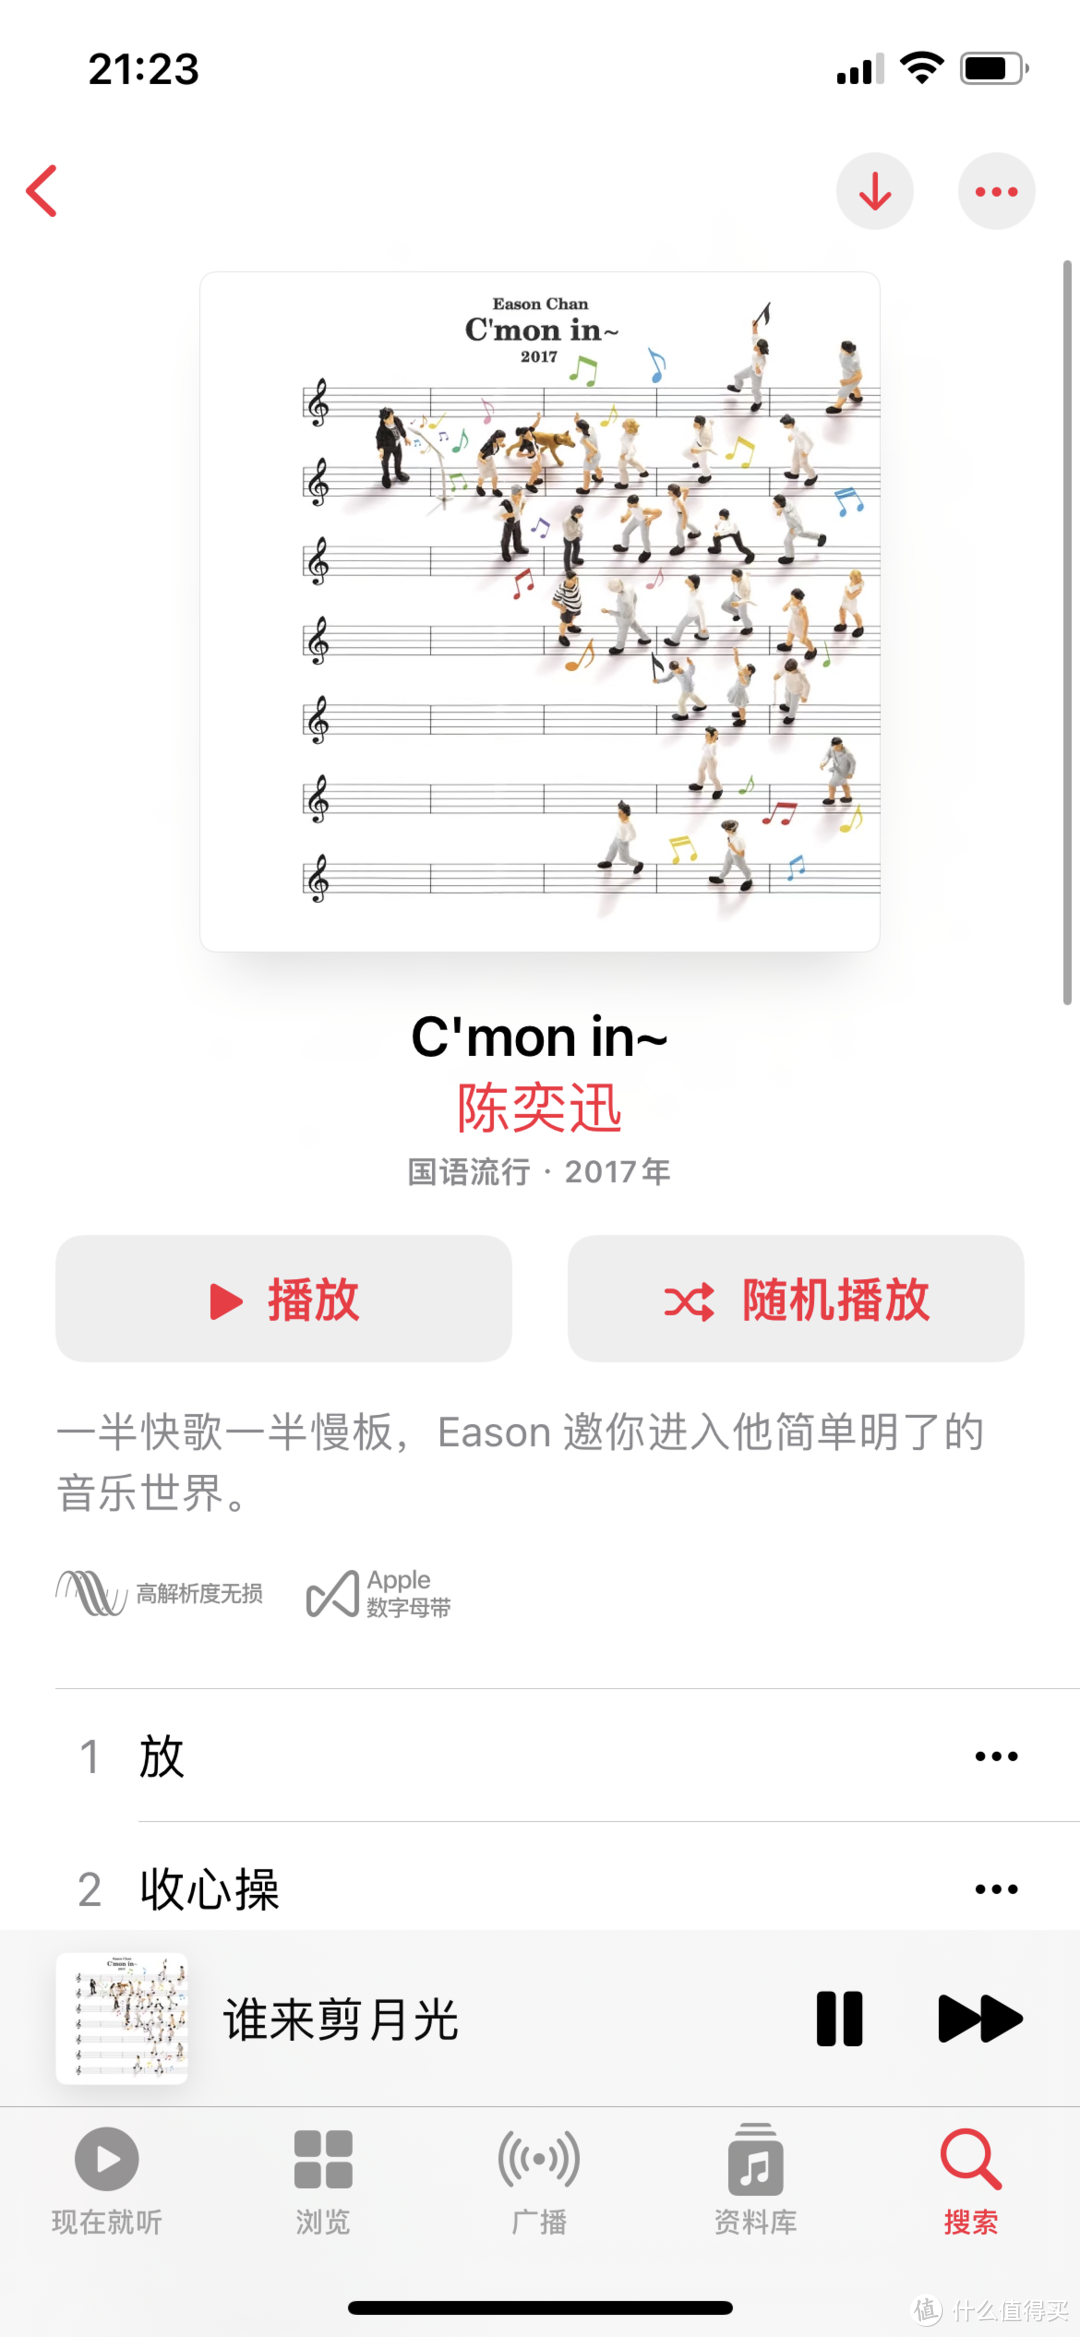 强烈推荐！Apple music 高解析度无损音乐设置方法及专辑曲目推荐